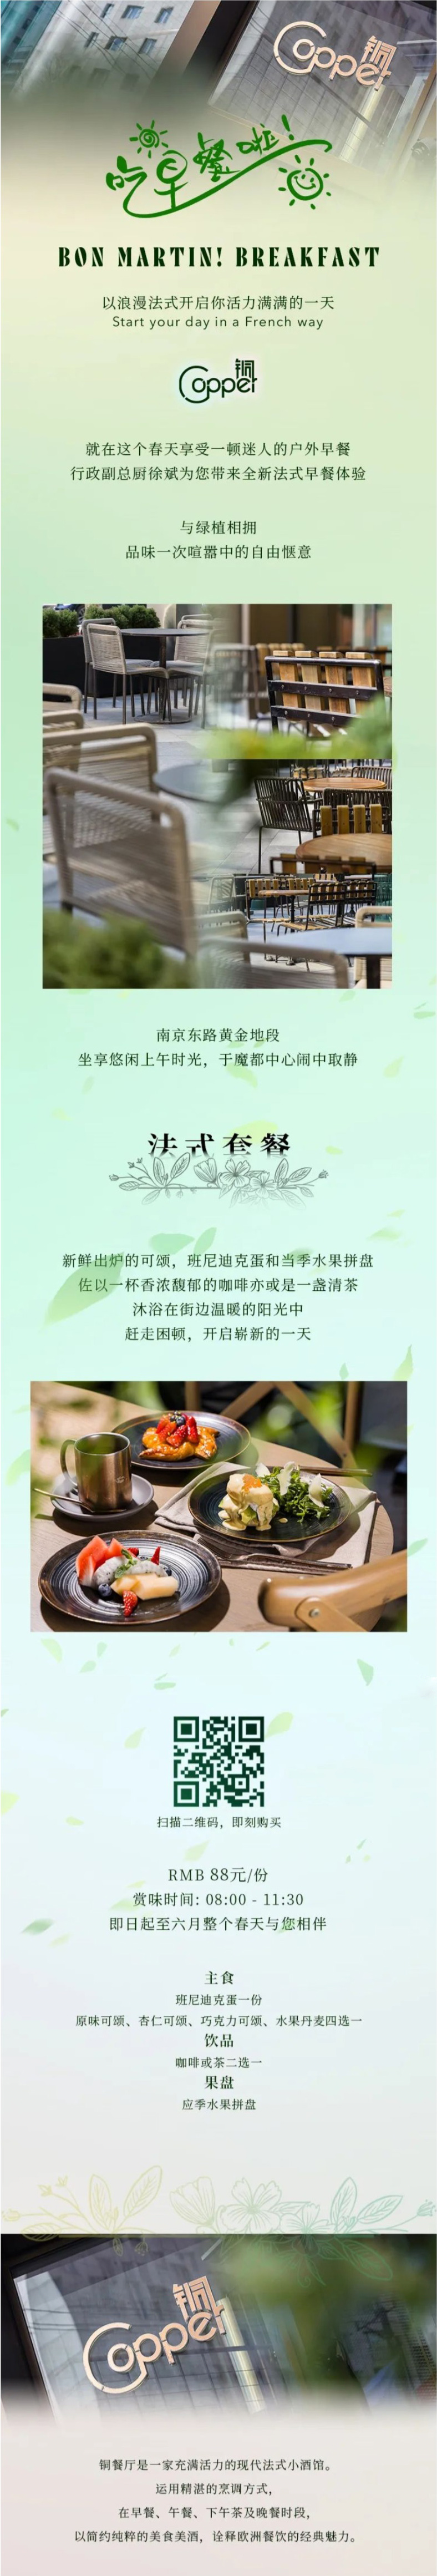 上海 | 上海康莱德酒店 铜餐厅早餐 BON MARTIN! BREAKFAST SET